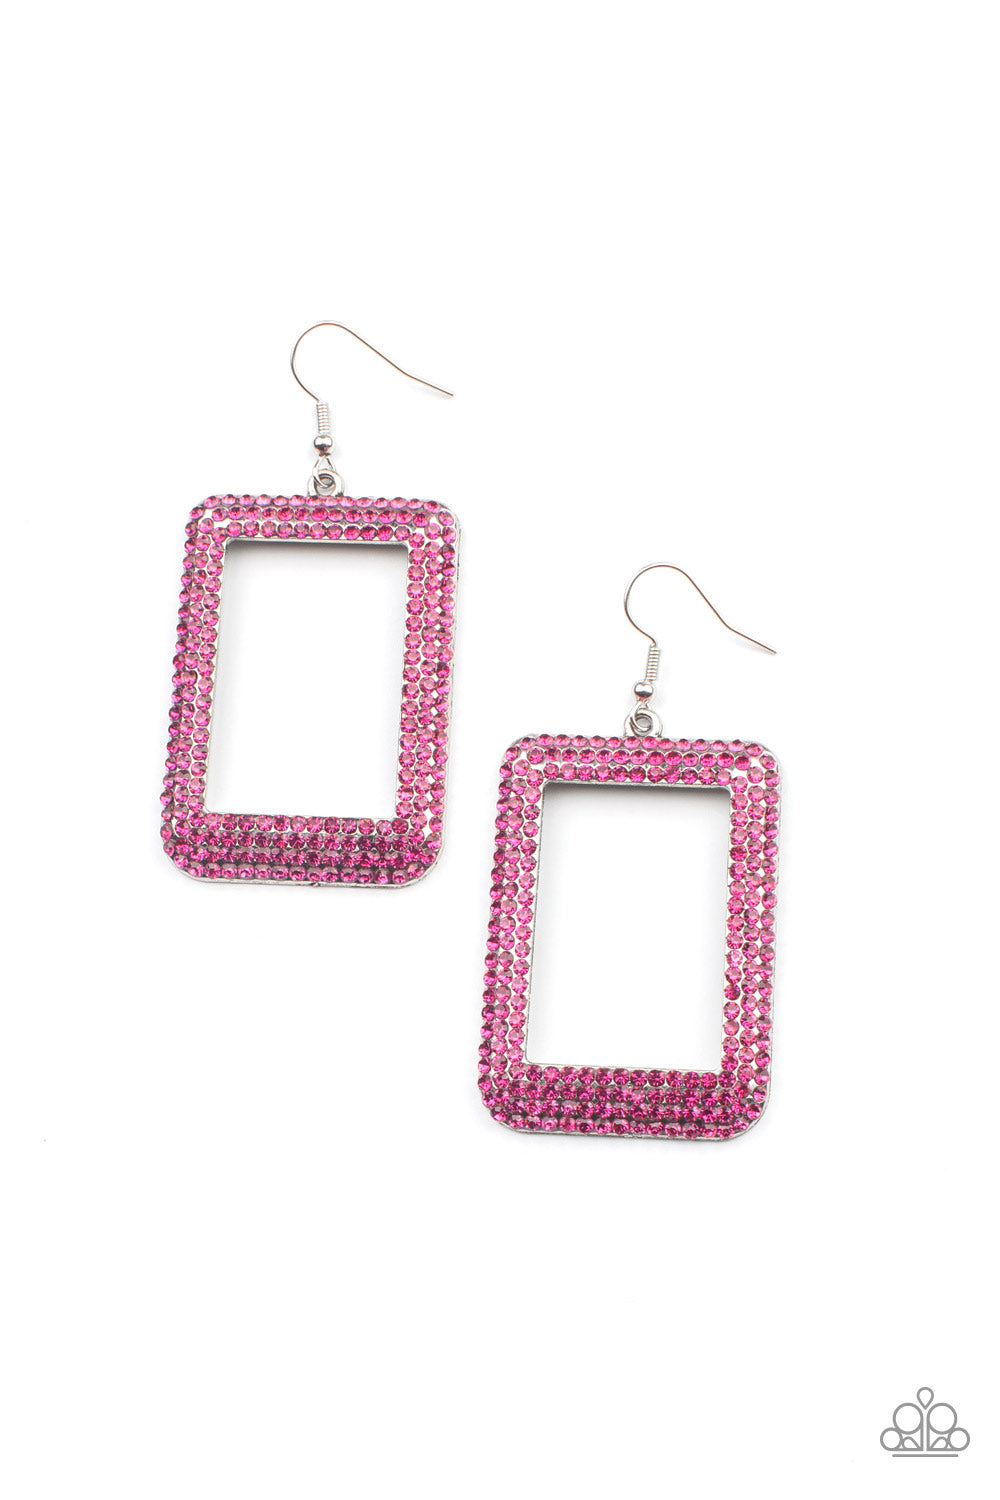 World FRAME-ous Pink

Earrings - Daria's Blings N Things